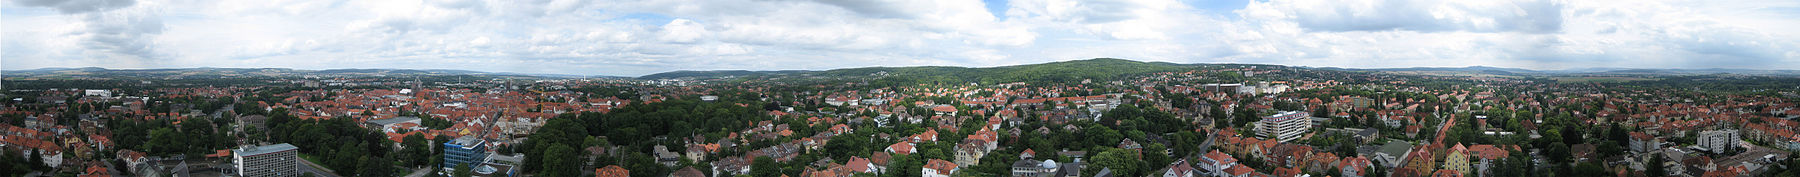 Göttingen panorama.jpg